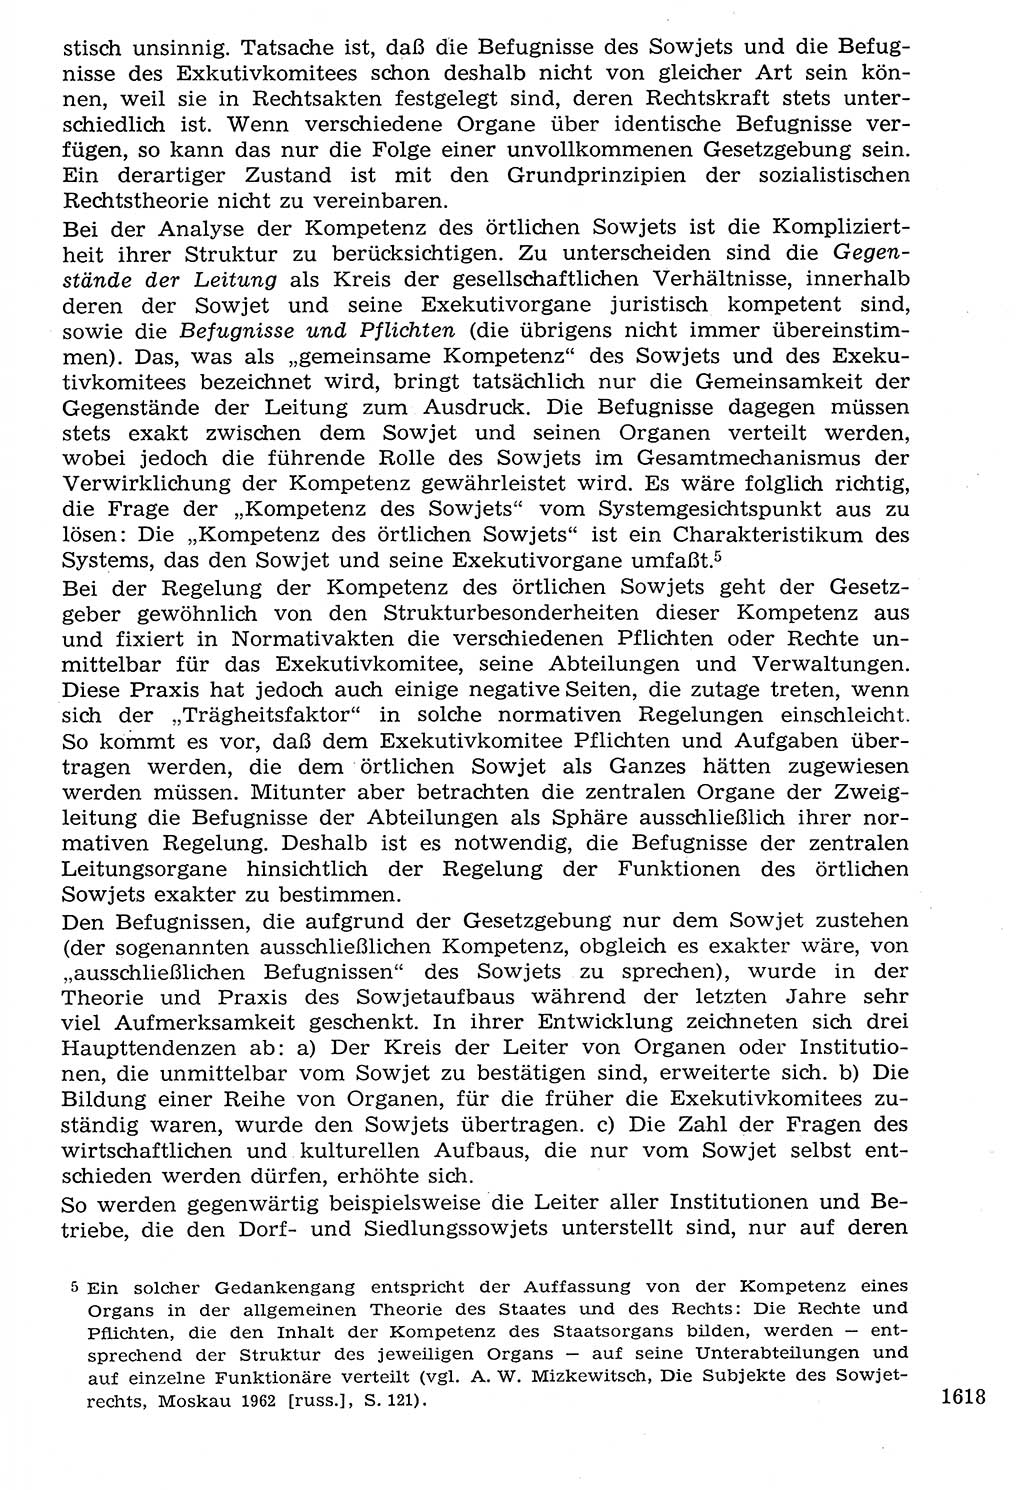 Staat und Recht (StuR), 17. Jahrgang [Deutsche Demokratische Republik (DDR)] 1968, Seite 1618 (StuR DDR 1968, S. 1618)